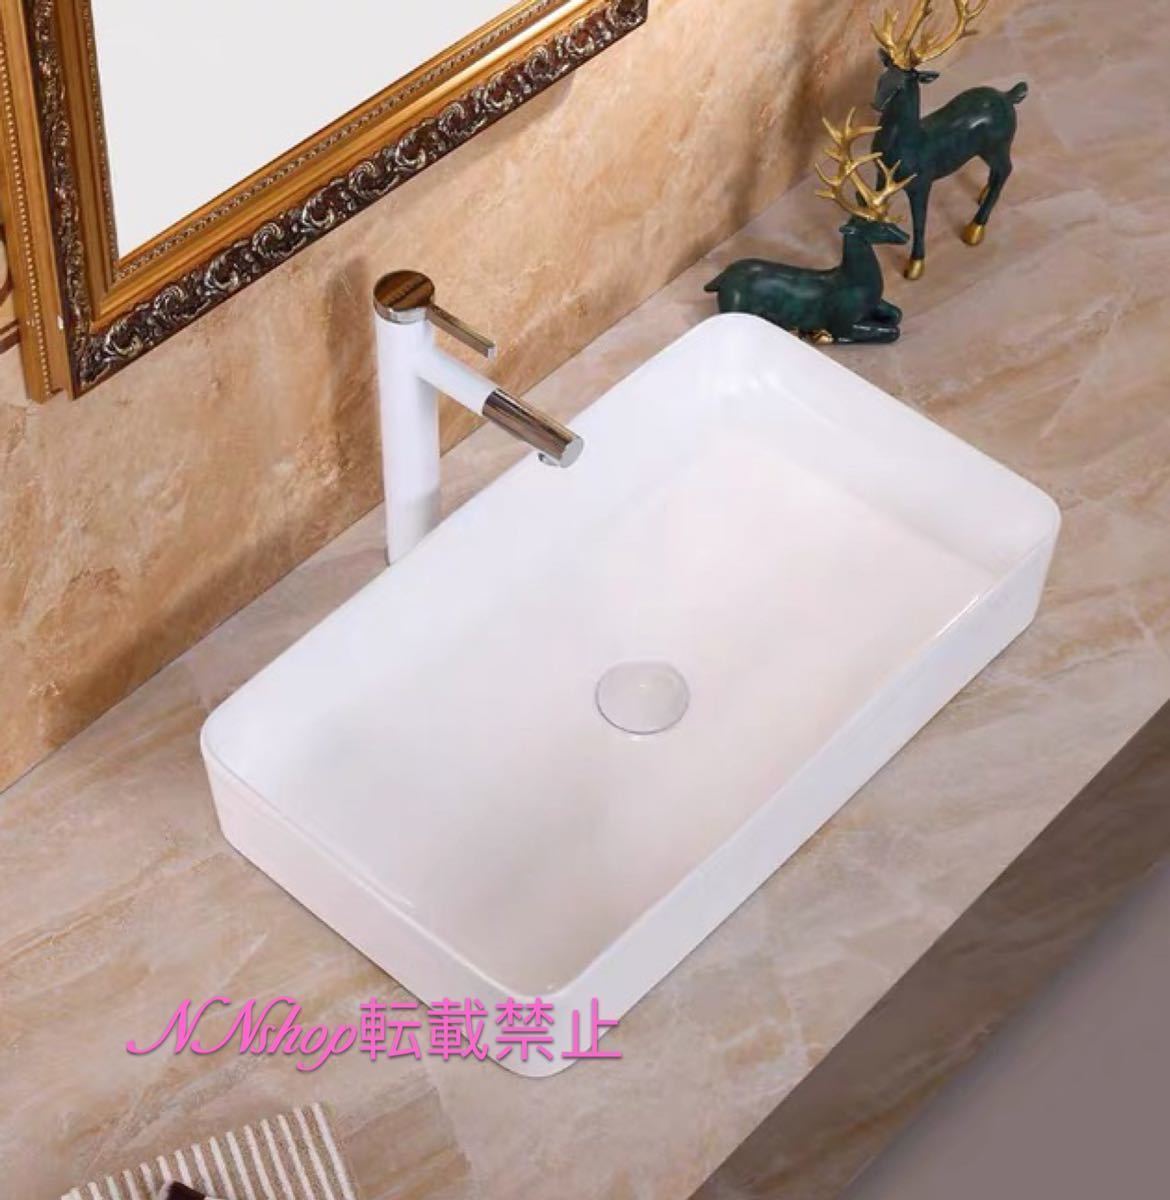 オリジナル A16769 高級洗面台 排水金具付き 蛇口 洗面器 手洗い鉢 